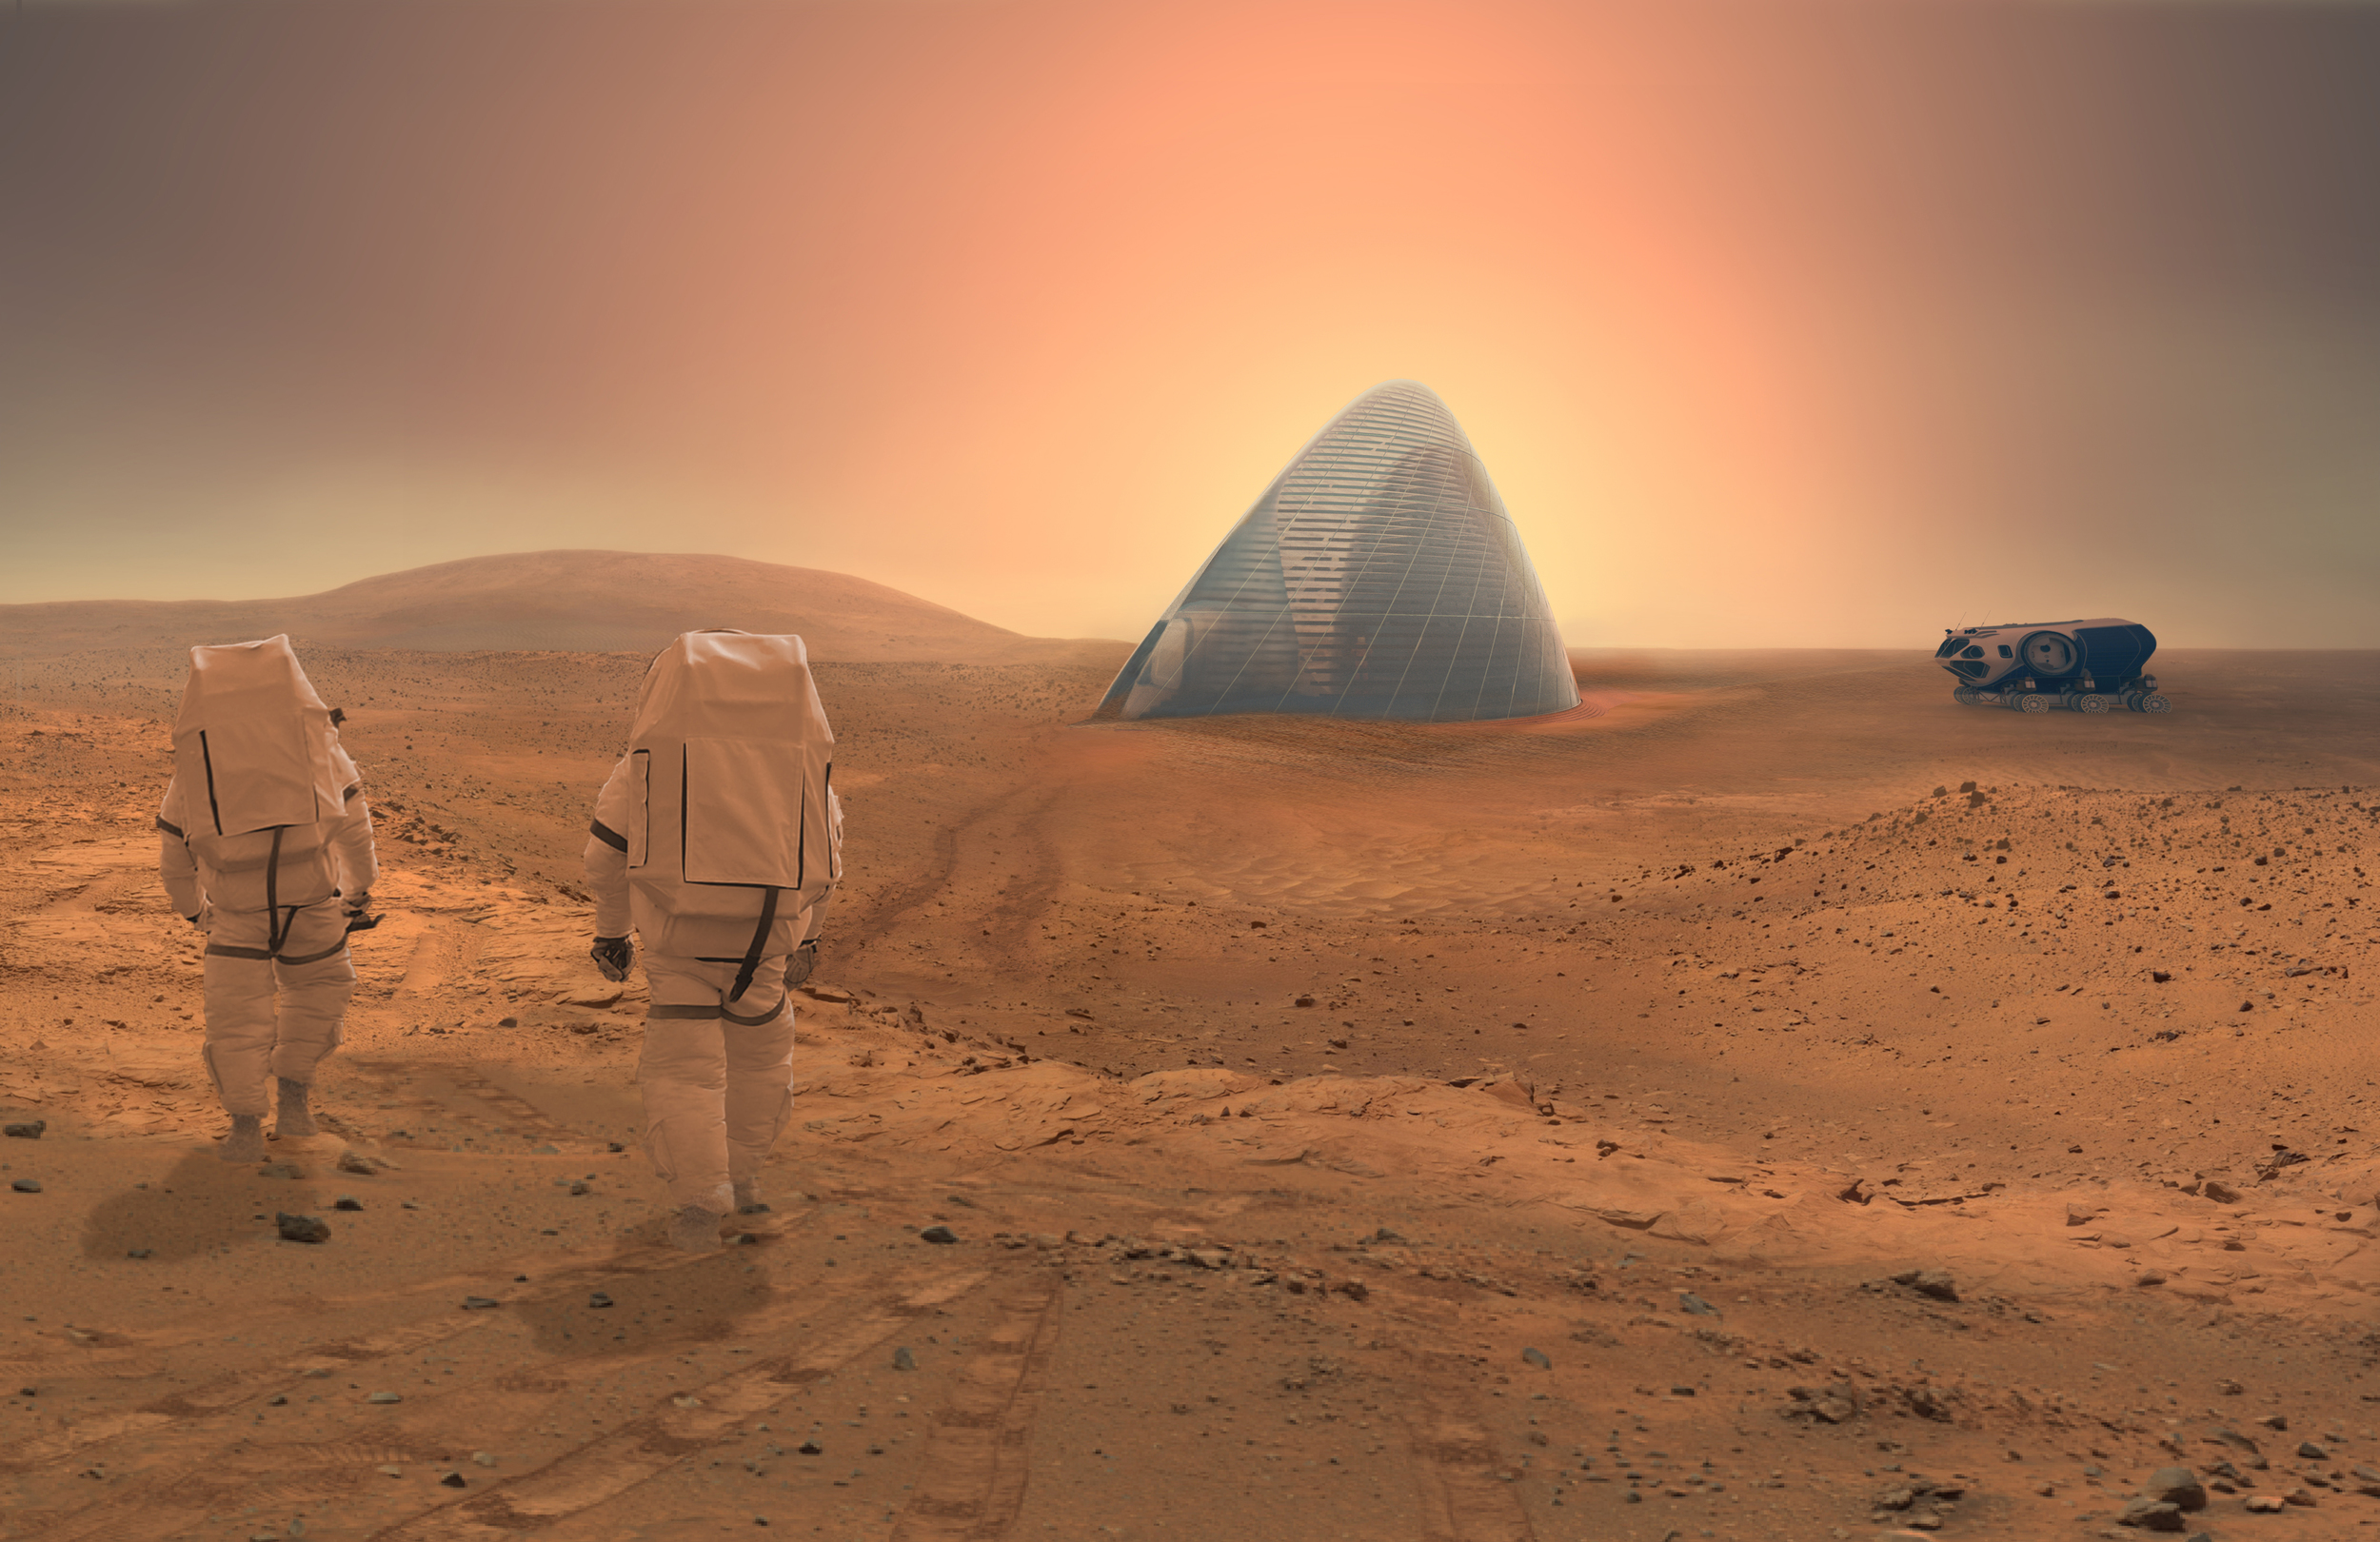 Есть ли жизнь на планете марс. Колонизация Марса. Колонизация Марса 2030. Колонизация Марса жизнь на Марсе. Ice House Марс.